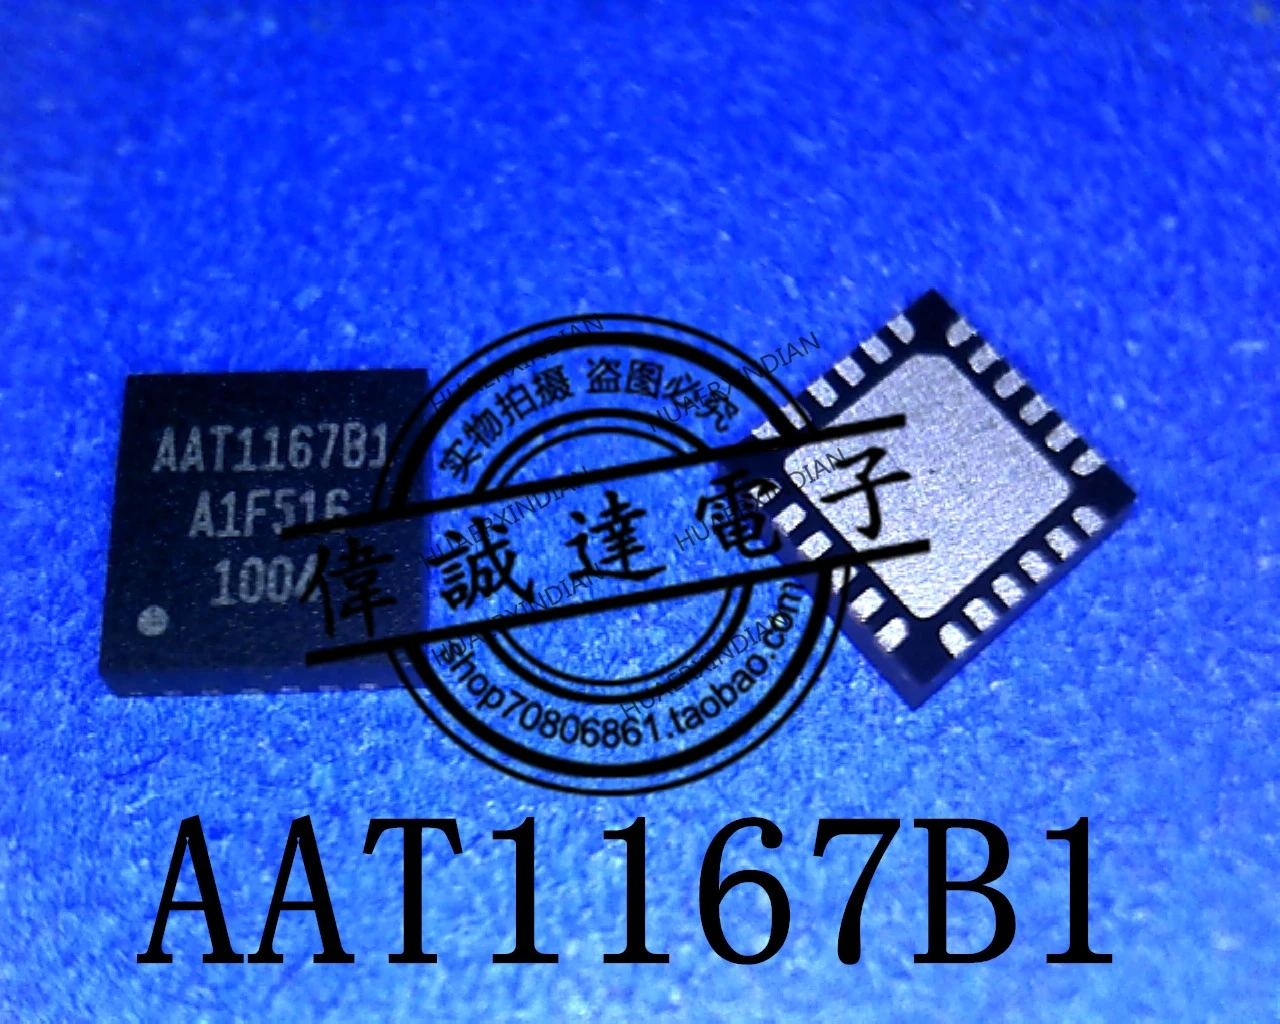  Новая оригинальная AAT1167B1 AAT1167B высококачественная реальная картинка в наличии